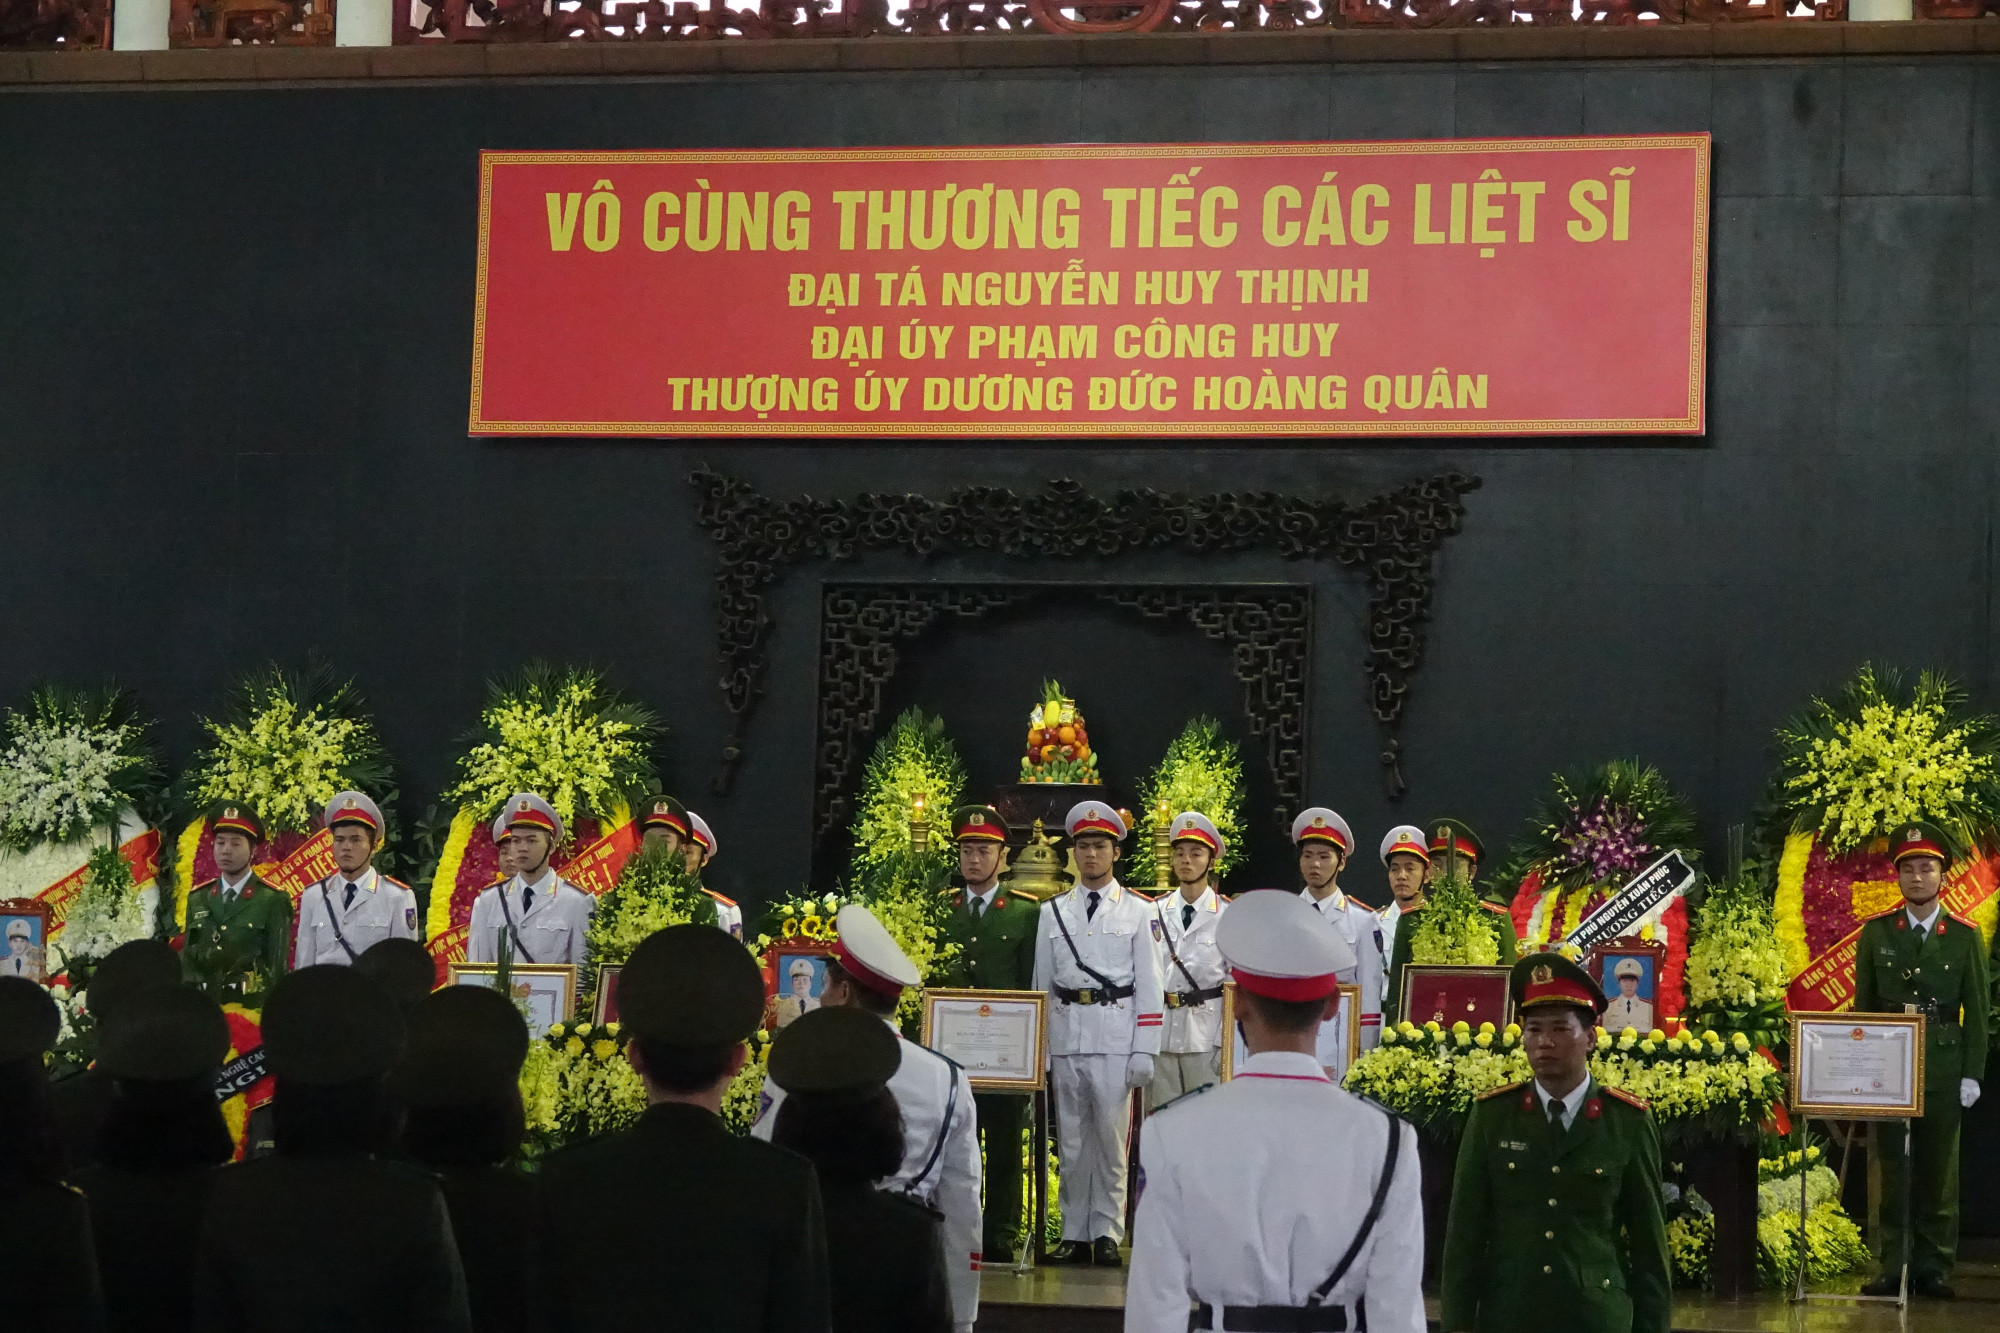 Tang lễ của 3 liệt sĩ được tổ chức trọng thể theo nghi thức của lực lượng Công an nhân dân.